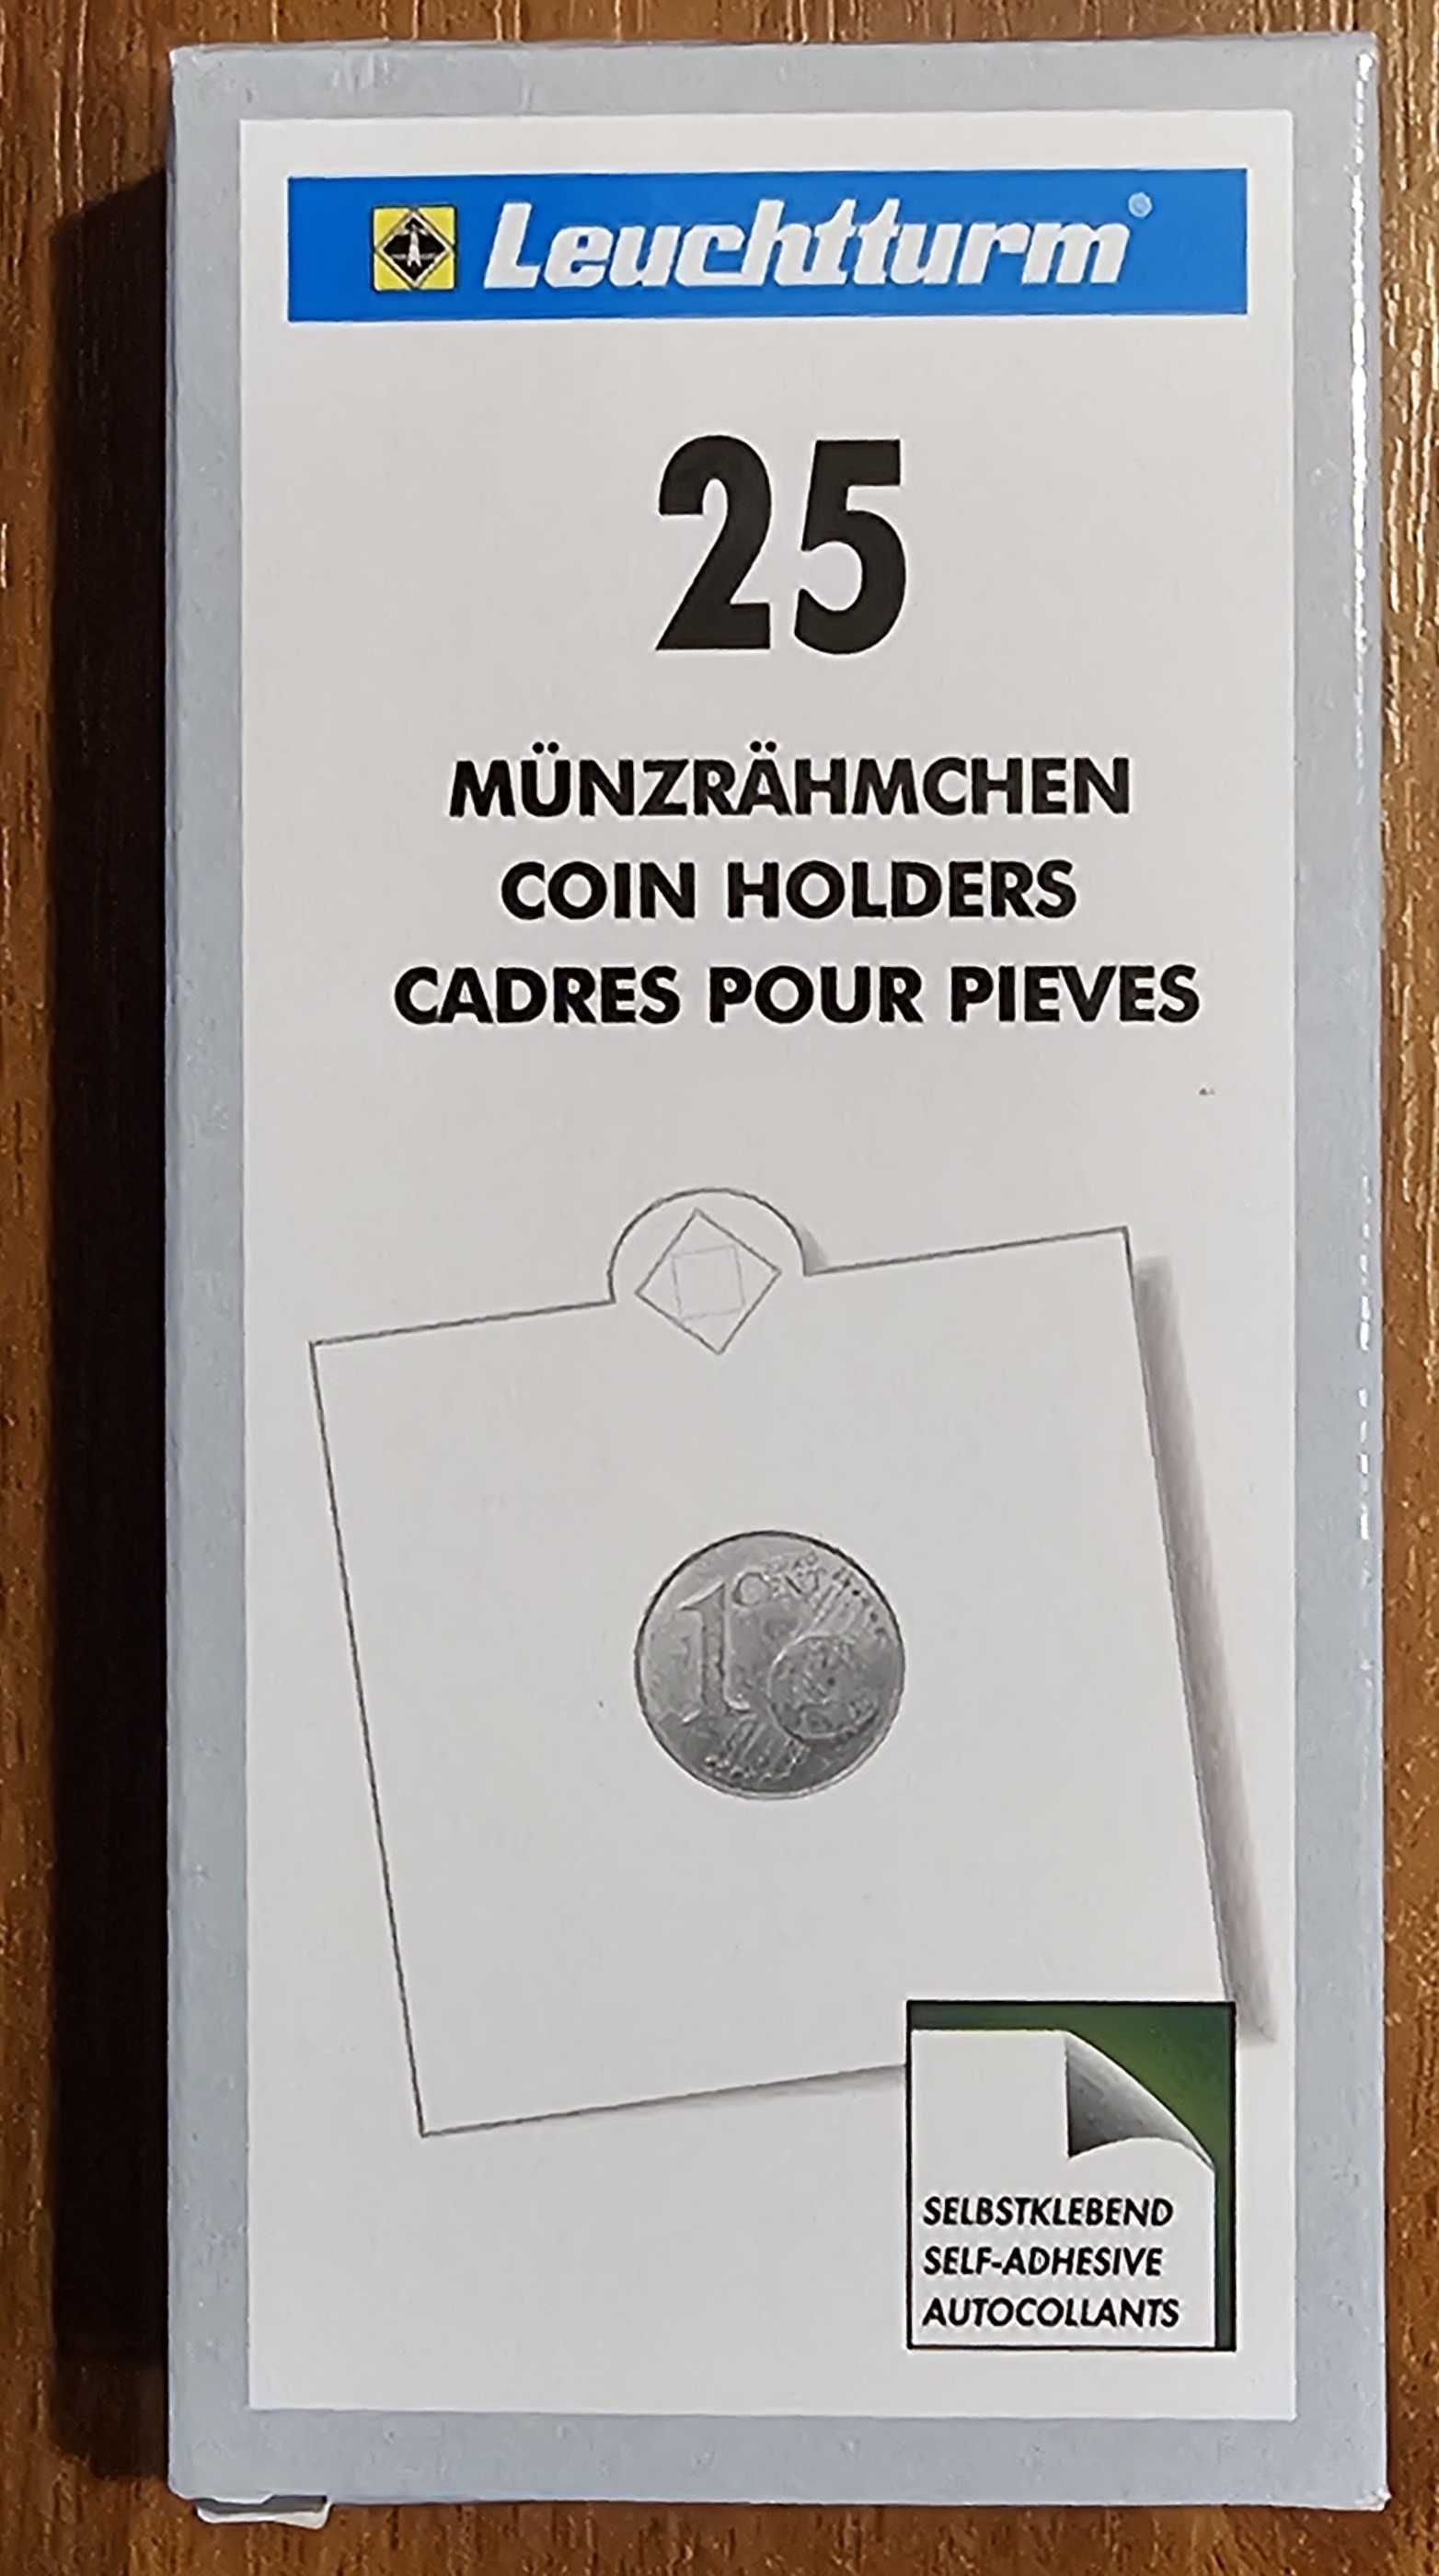 Cartonașe autoadezive pentru monede, marca Leuchtturm (Germania)